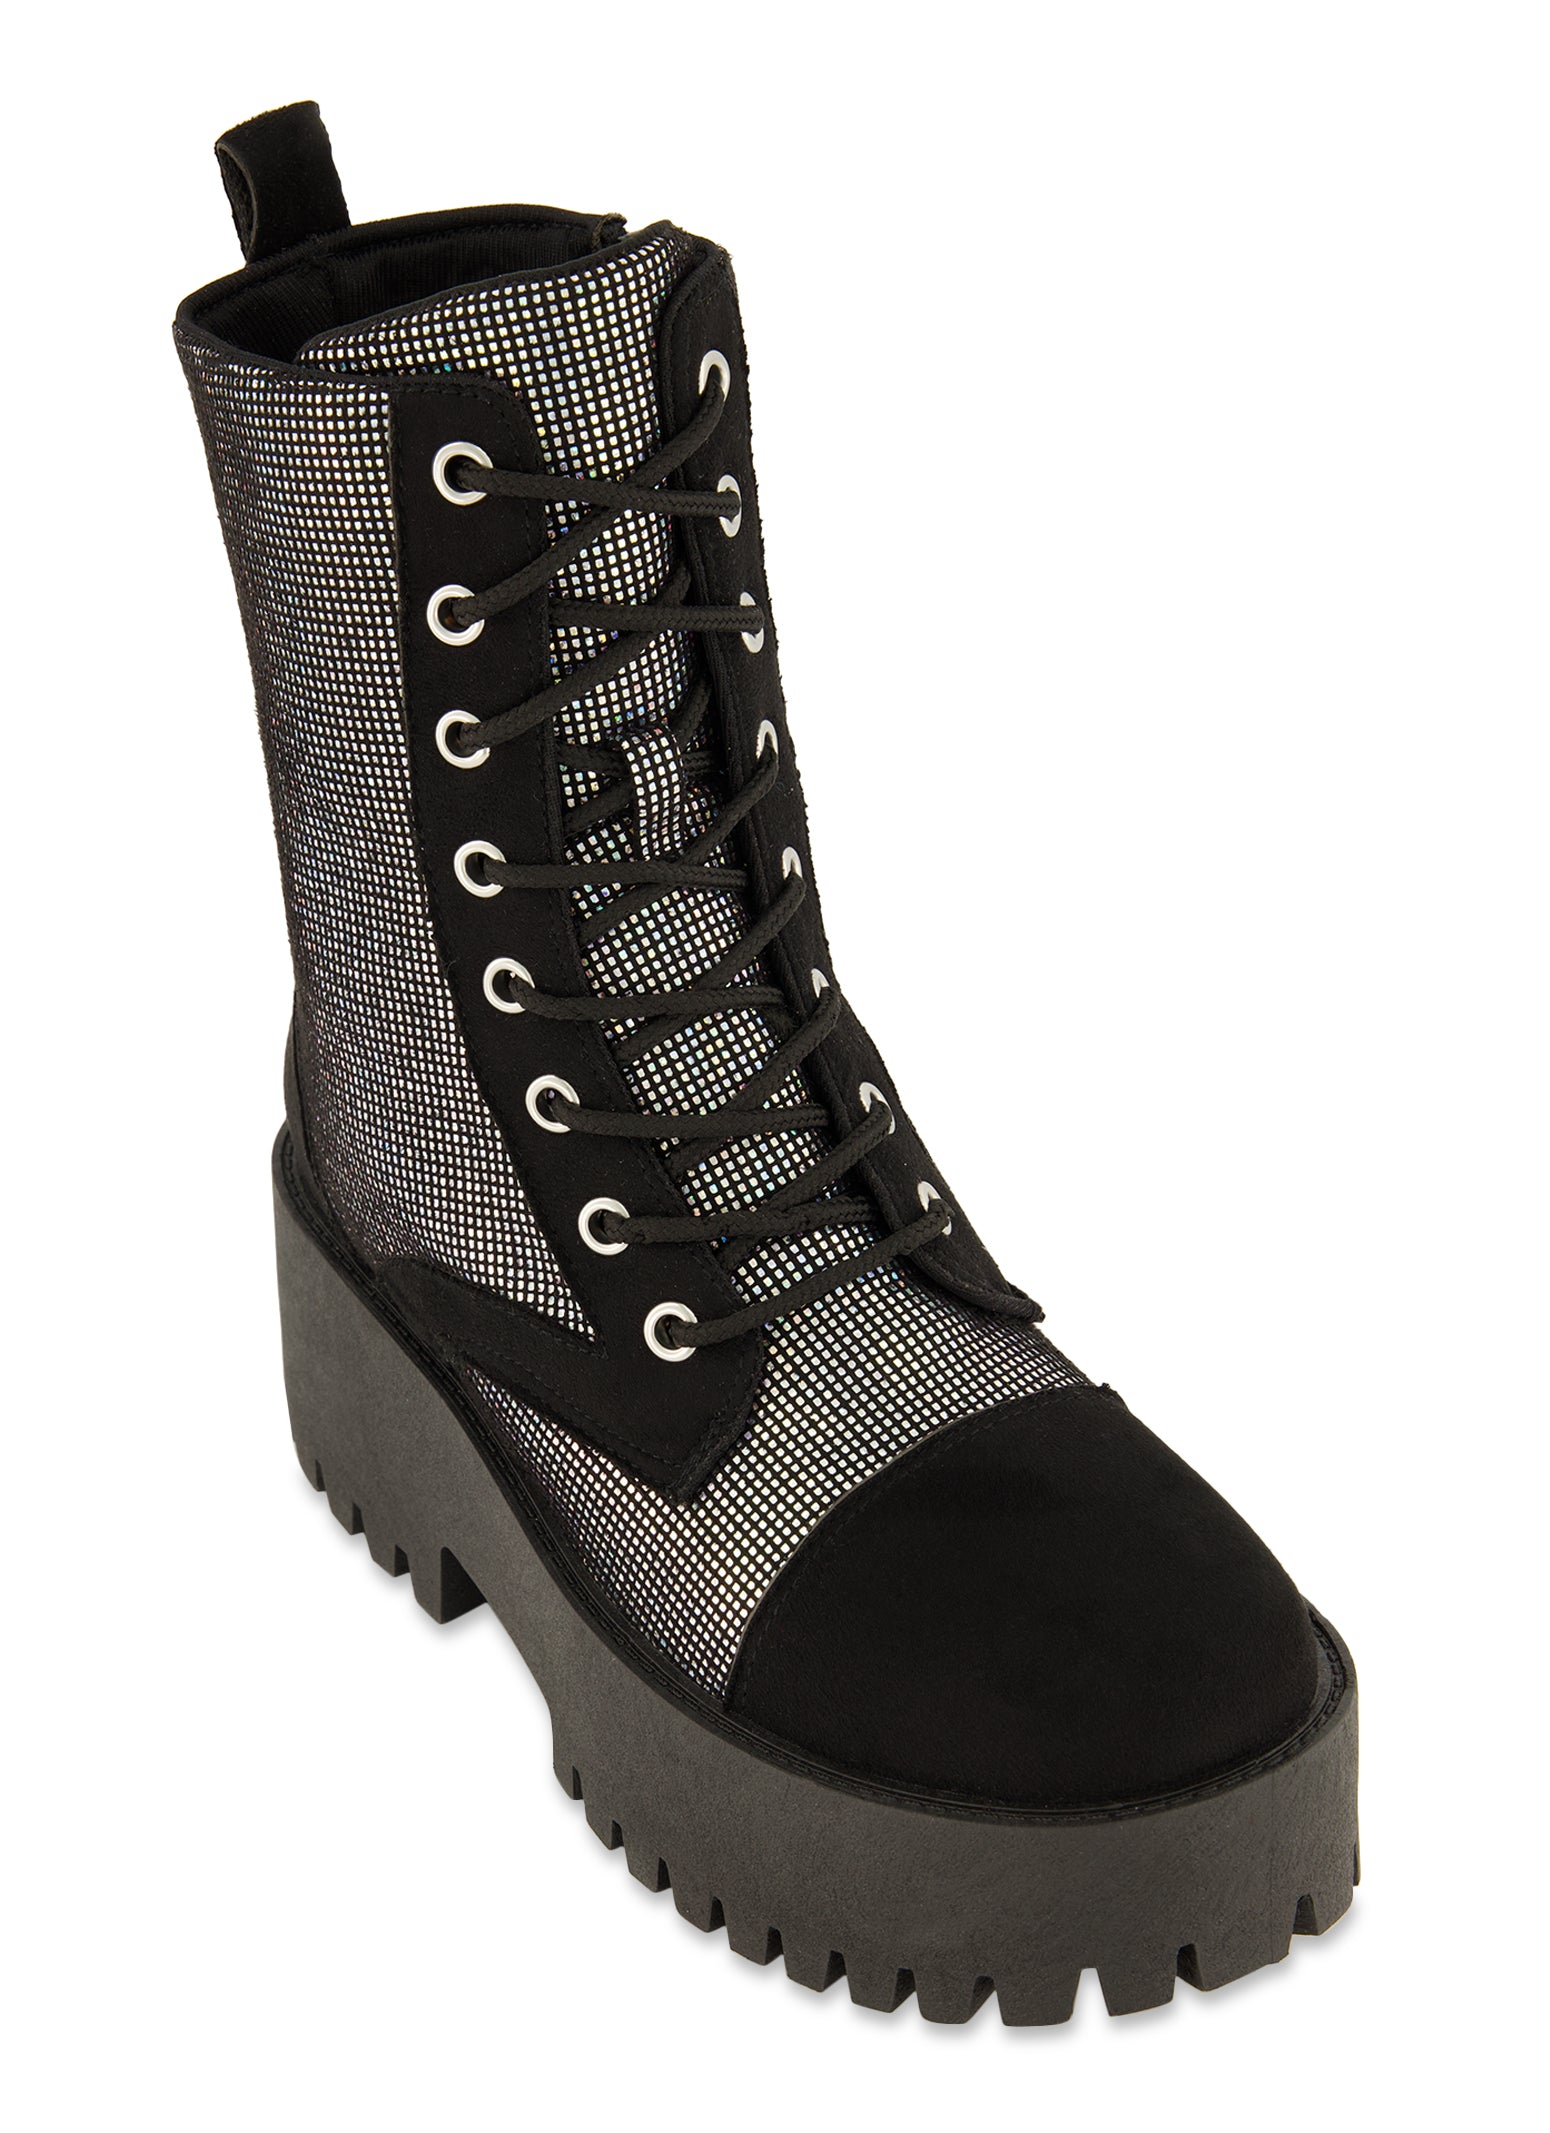 Womens Platform Lug Sole Combat Lace Up Boots, Black, Size 6